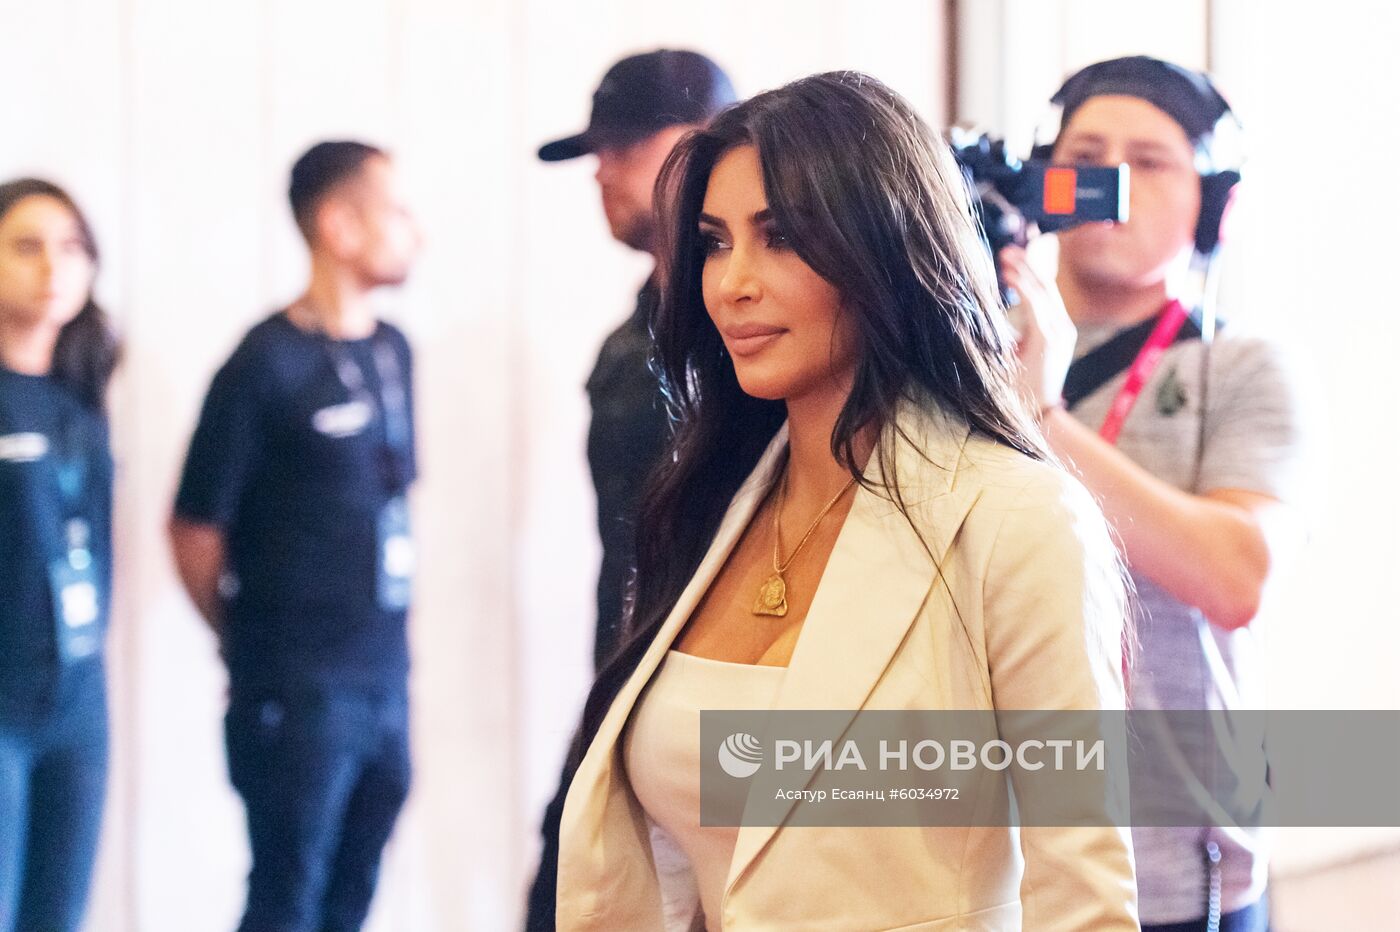 Ким Кардашьян посетила форум WCIT 2019 в Ереване